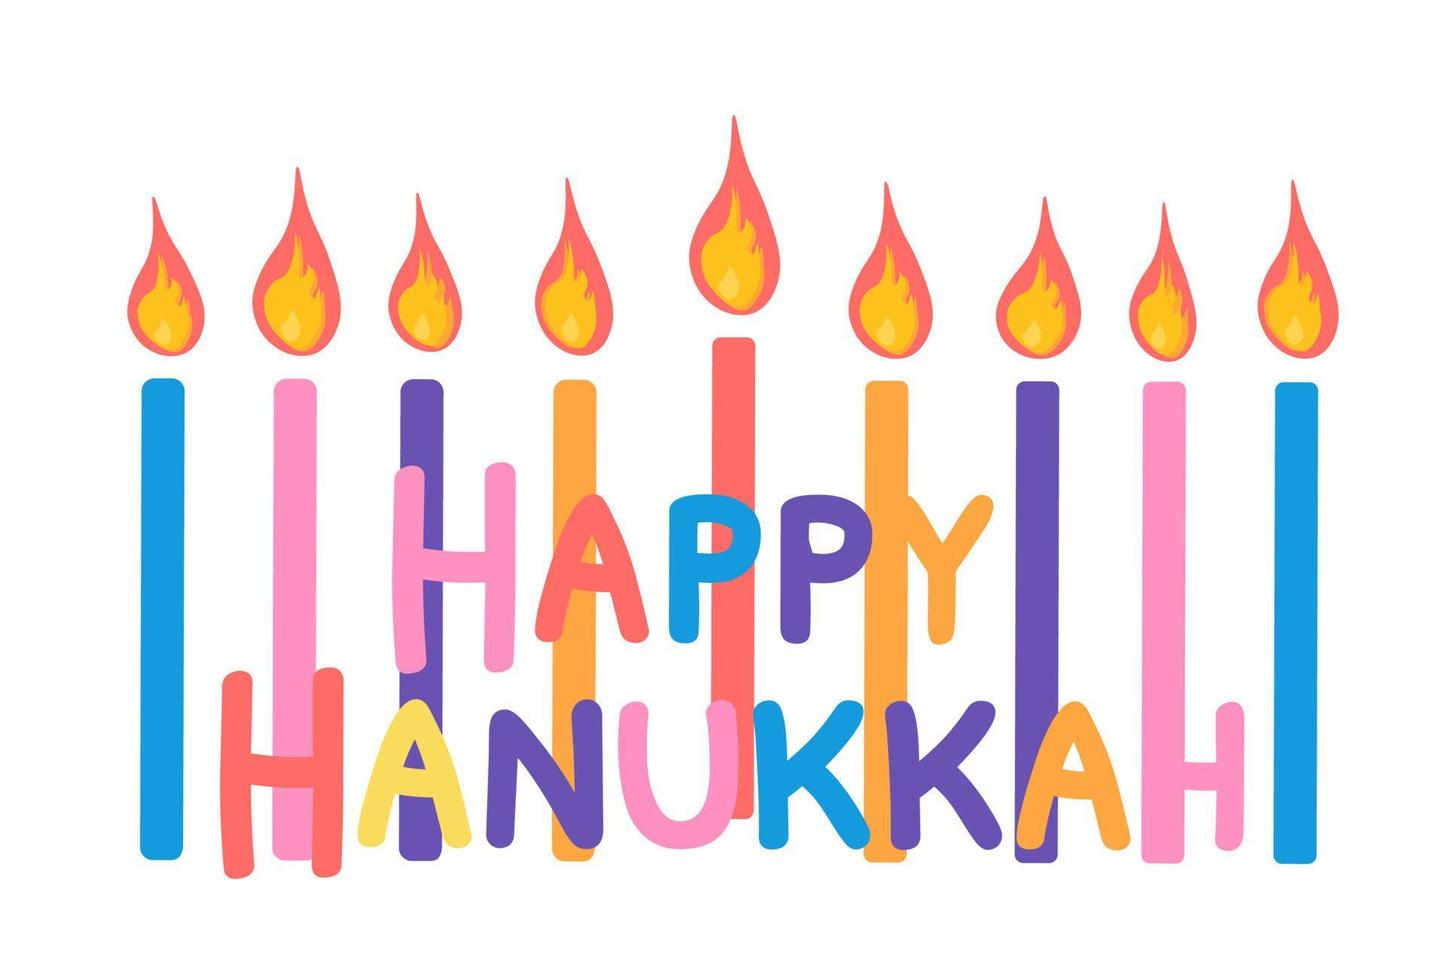 feliz hanukkah cartão ilustração vetorial isolada no fundo branco vetor